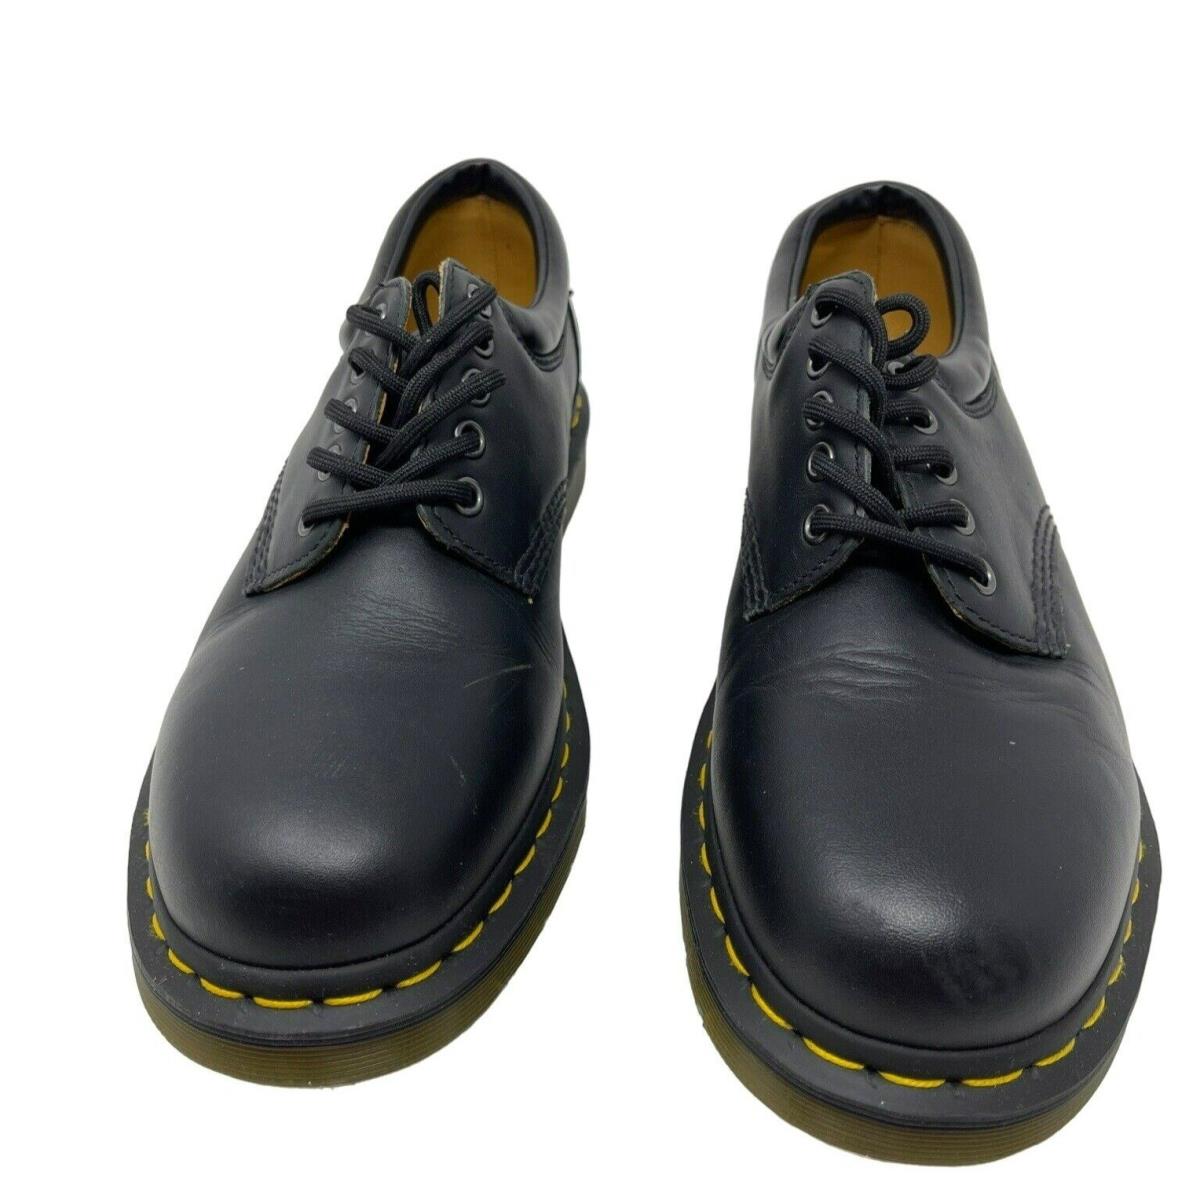 Dr Martens 11849 Napa Leather Oxford Shoes Size Men`s 10 Women`s 11